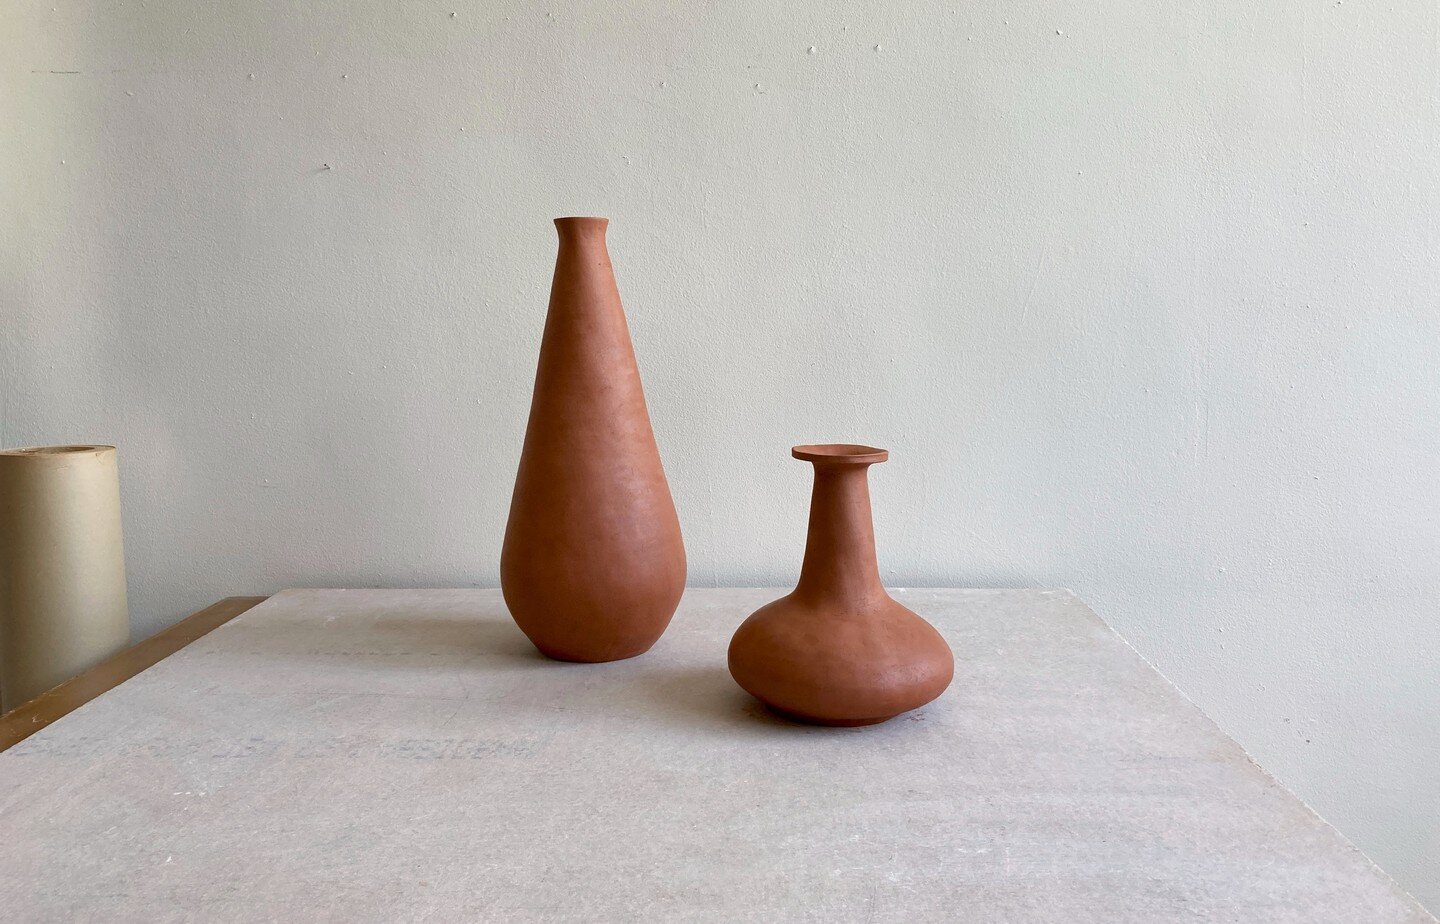 greenware 7.19.22 
.
.
.
#carnevale365 #coilbuilt #ceramic #ceramics #stoneware #vessel #vase #interiordesign #design #madeinchicago #sculptureforyoureveryday